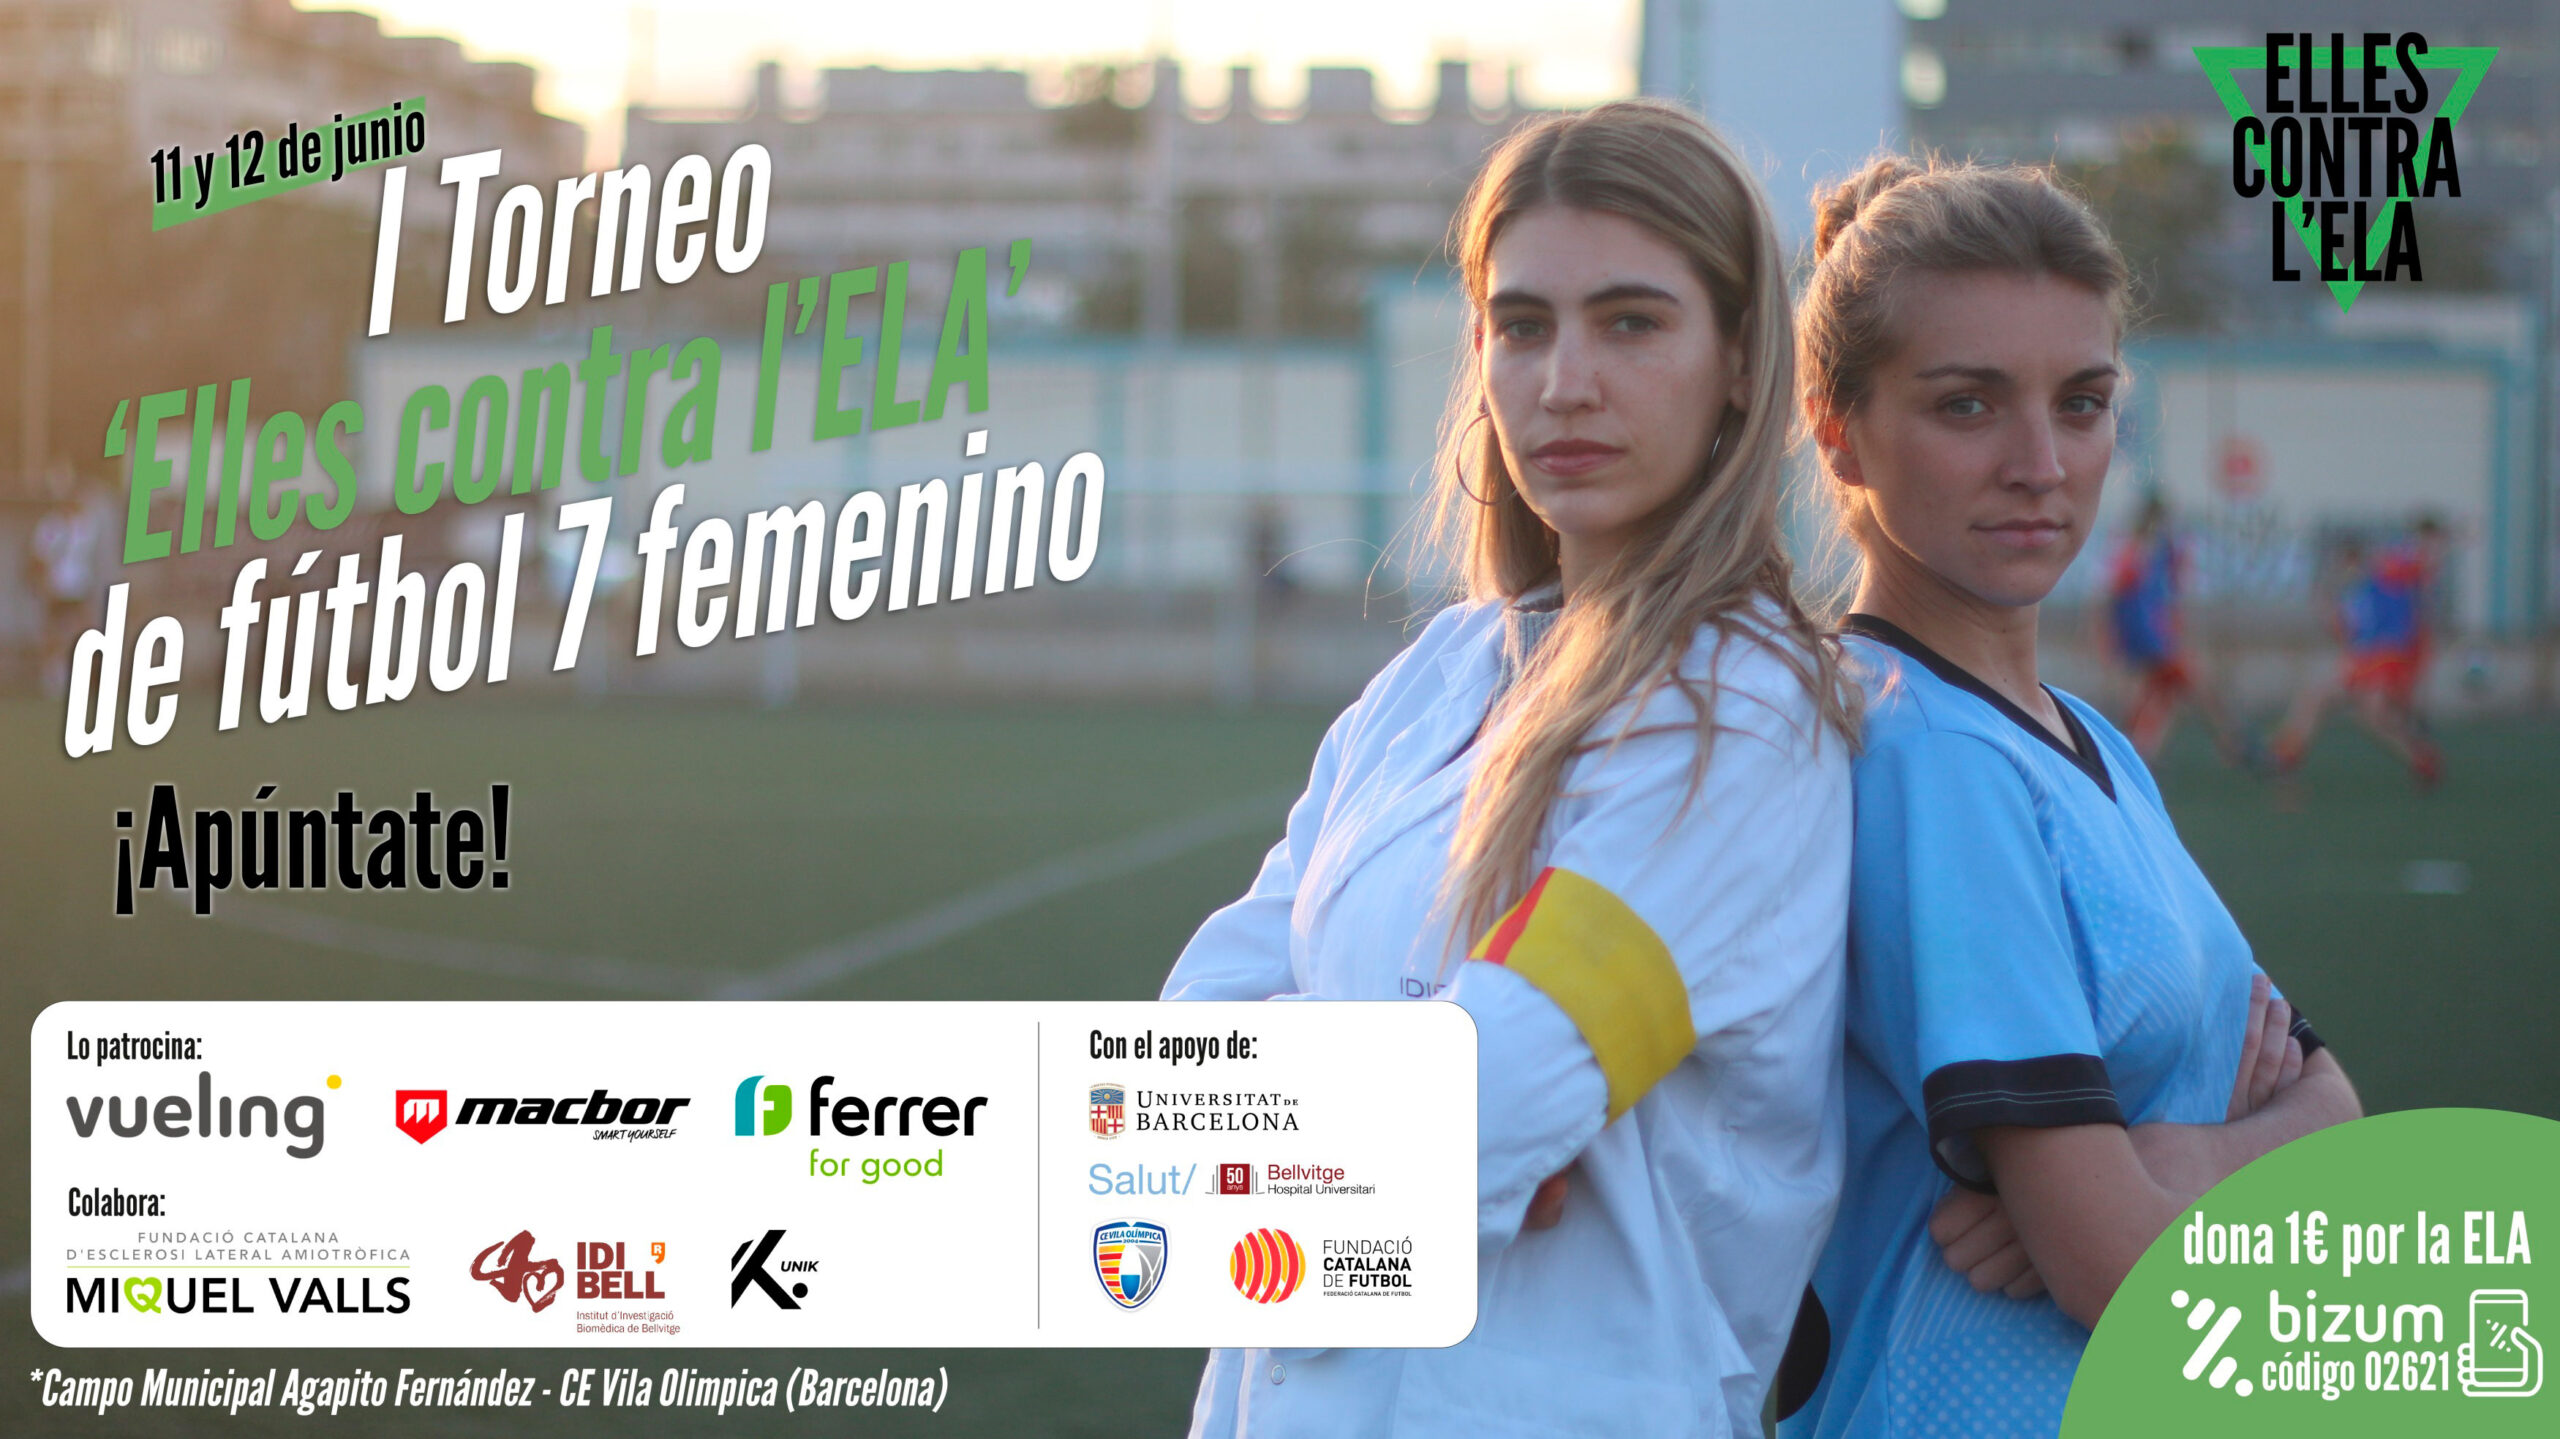 Macbor colabora con el primer torneo solidario “Ellas contra la ELA” de fútbol 7 femenino